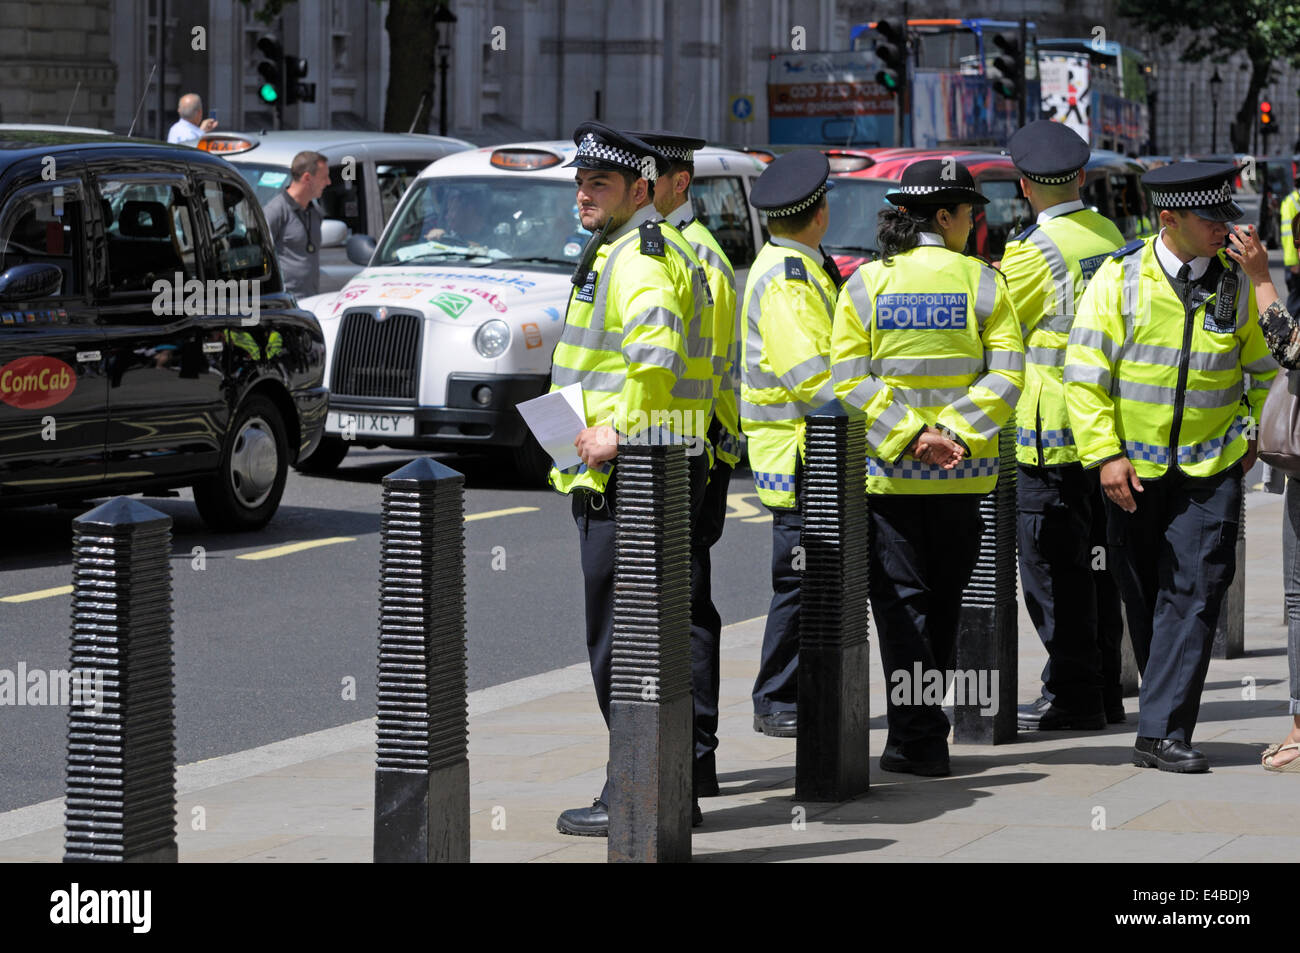 Londres, Angleterre, Royaume-Uni. Agents de la police métropolitaine de service durant une manifestation des chauffeurs de taxi dans le centre de Londres, le 11 juin, 2014 Banque D'Images